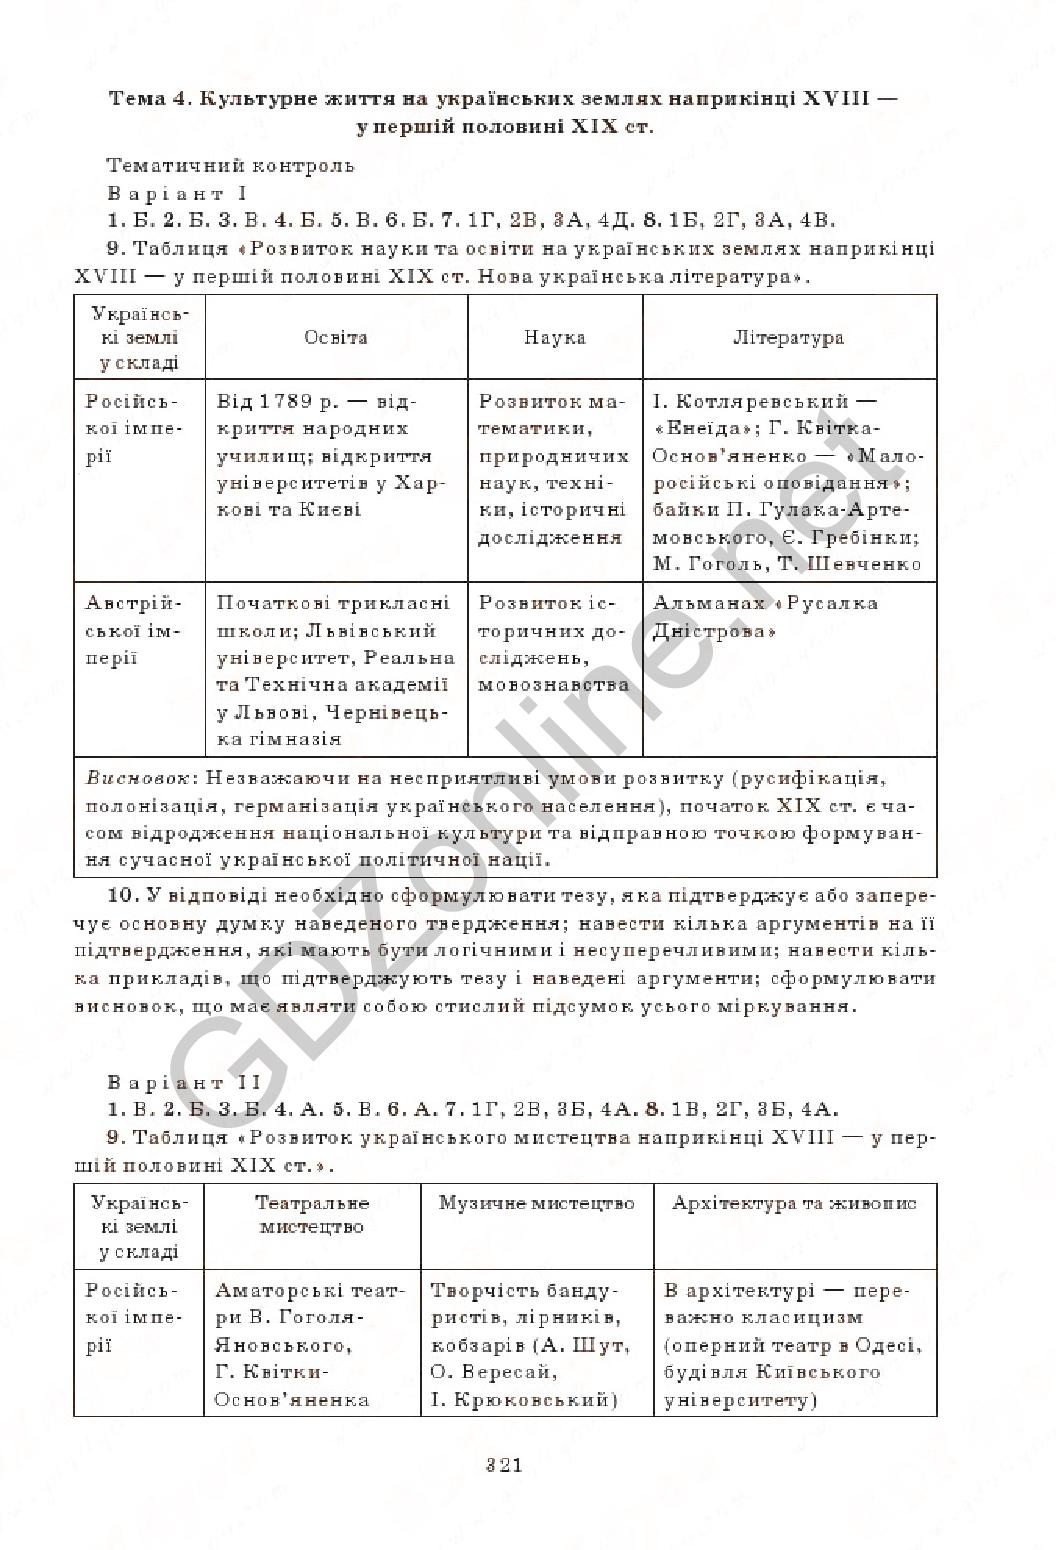 Решебник по комплексной тетради для контроля знания по истории украины 7 класс святокум